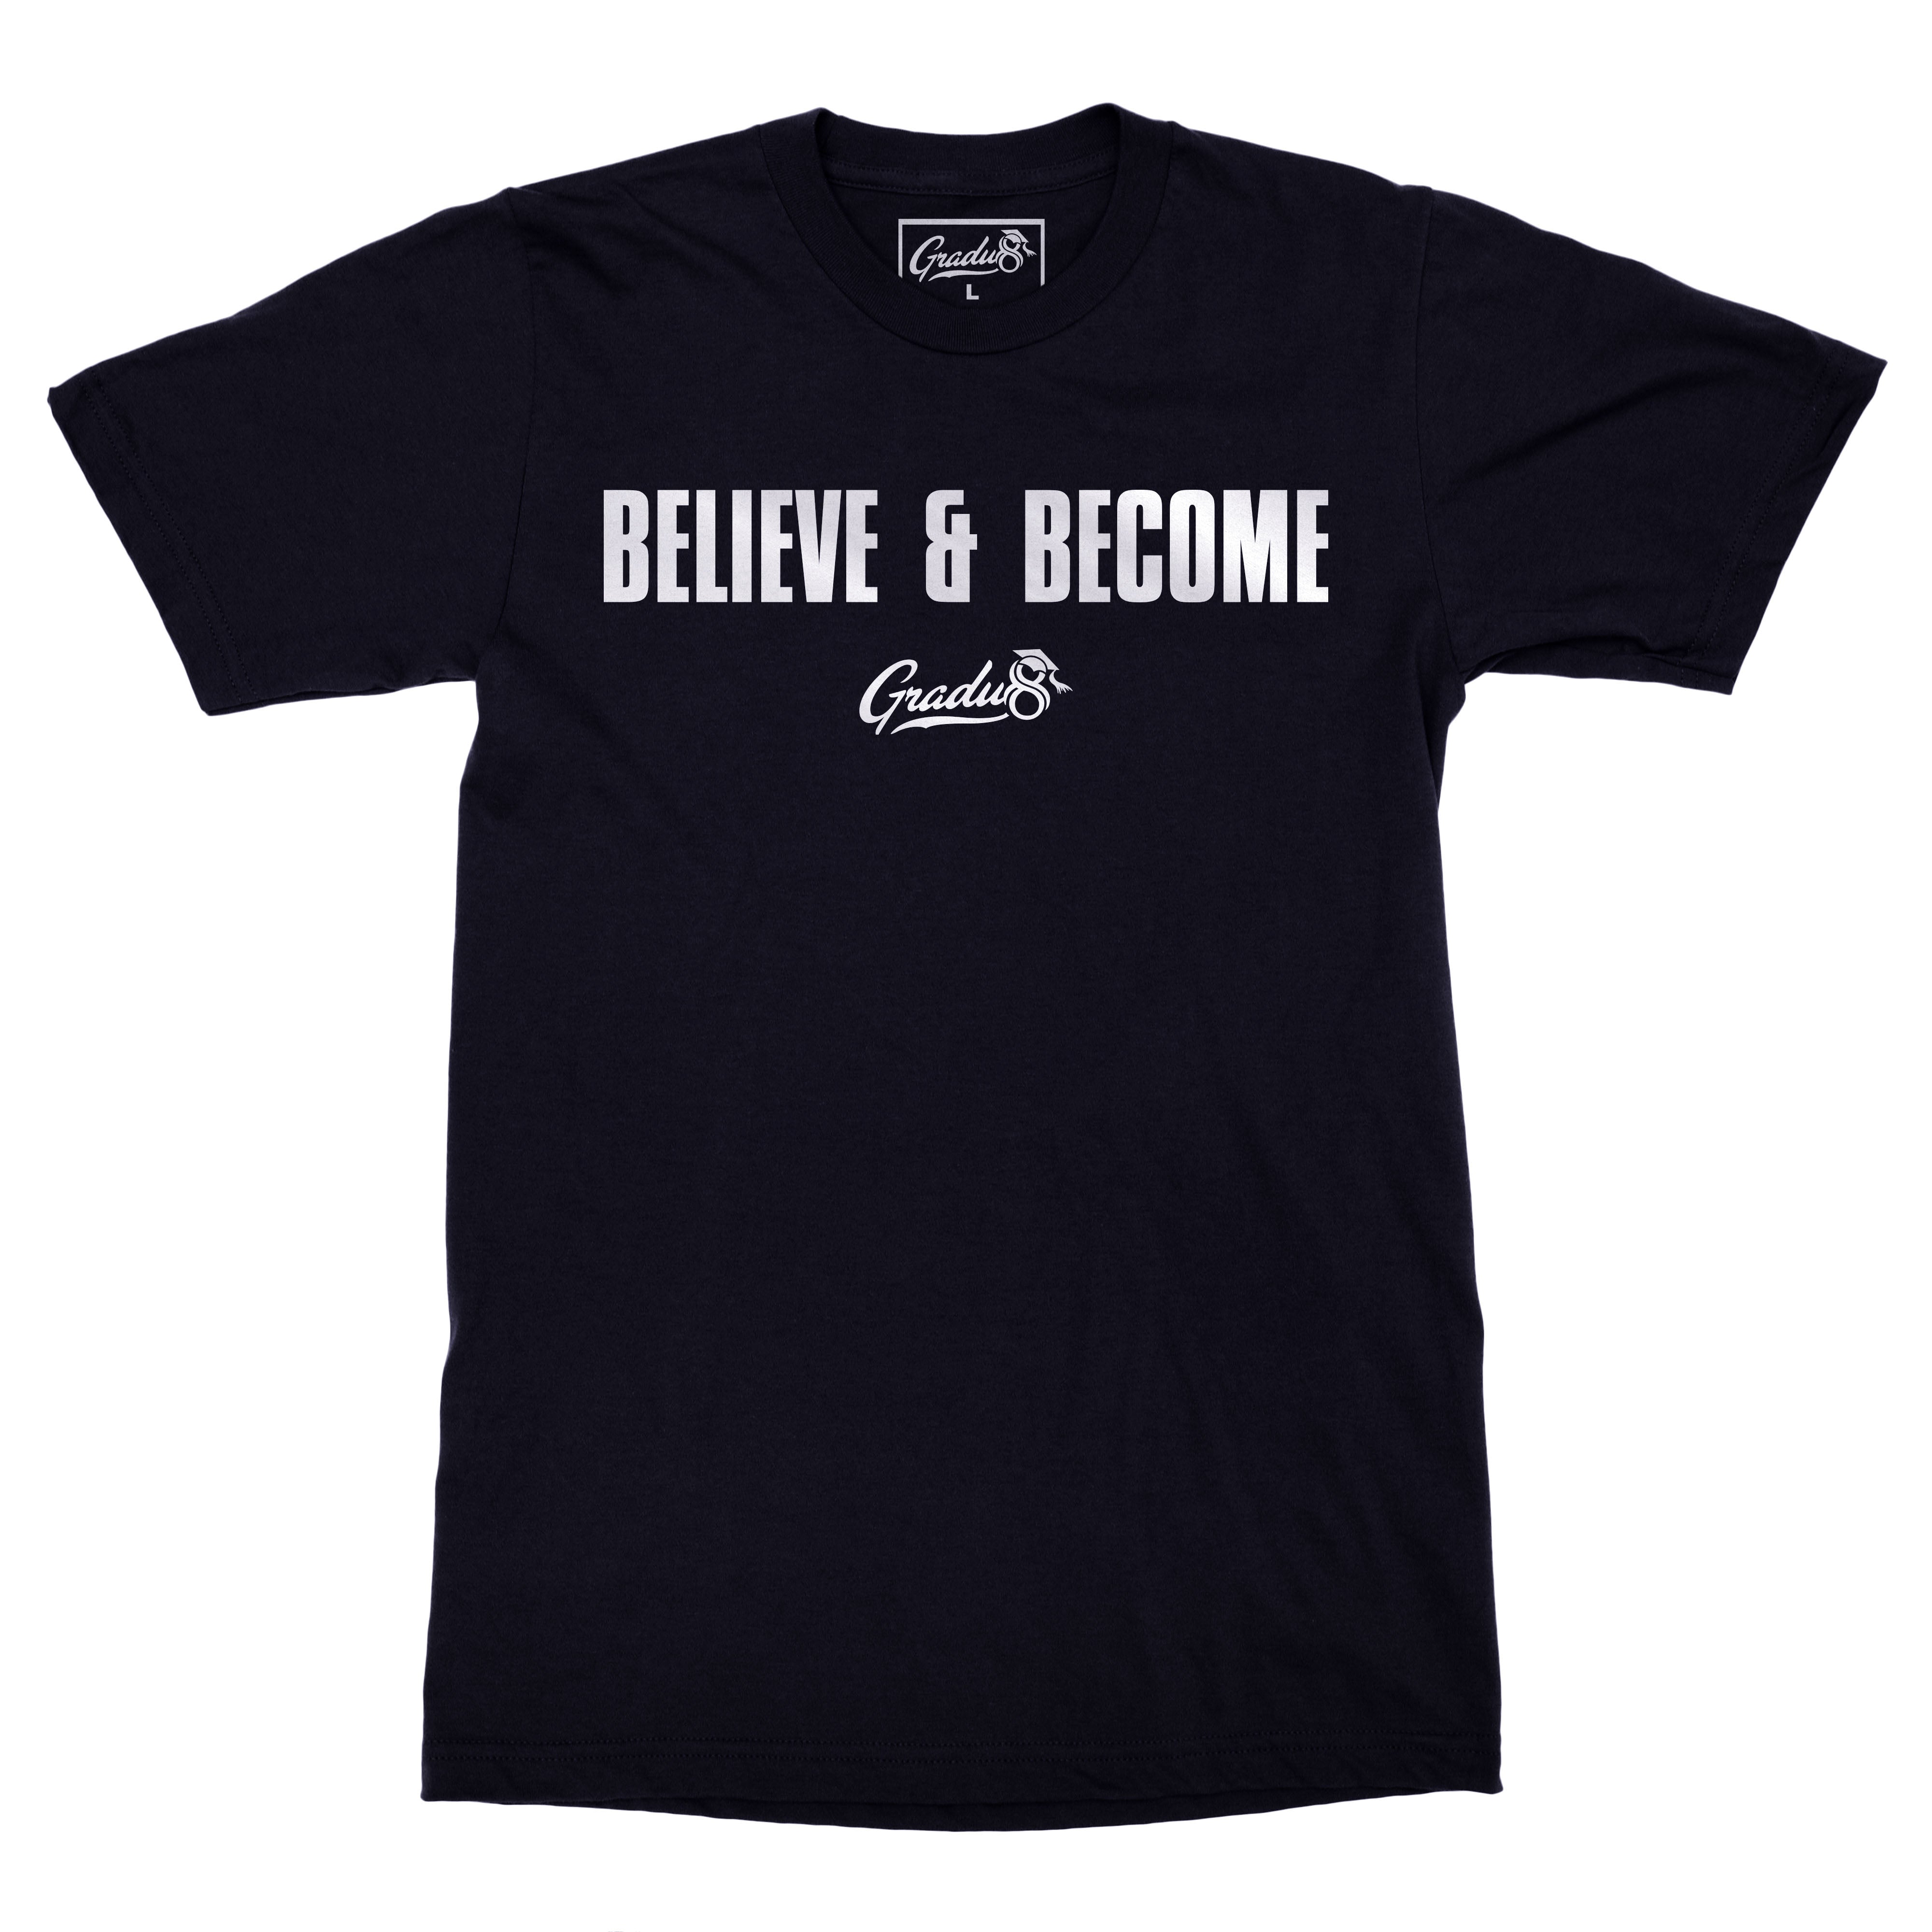 Original Gradu8 Believe & Become  T-shirt - Navy Blue